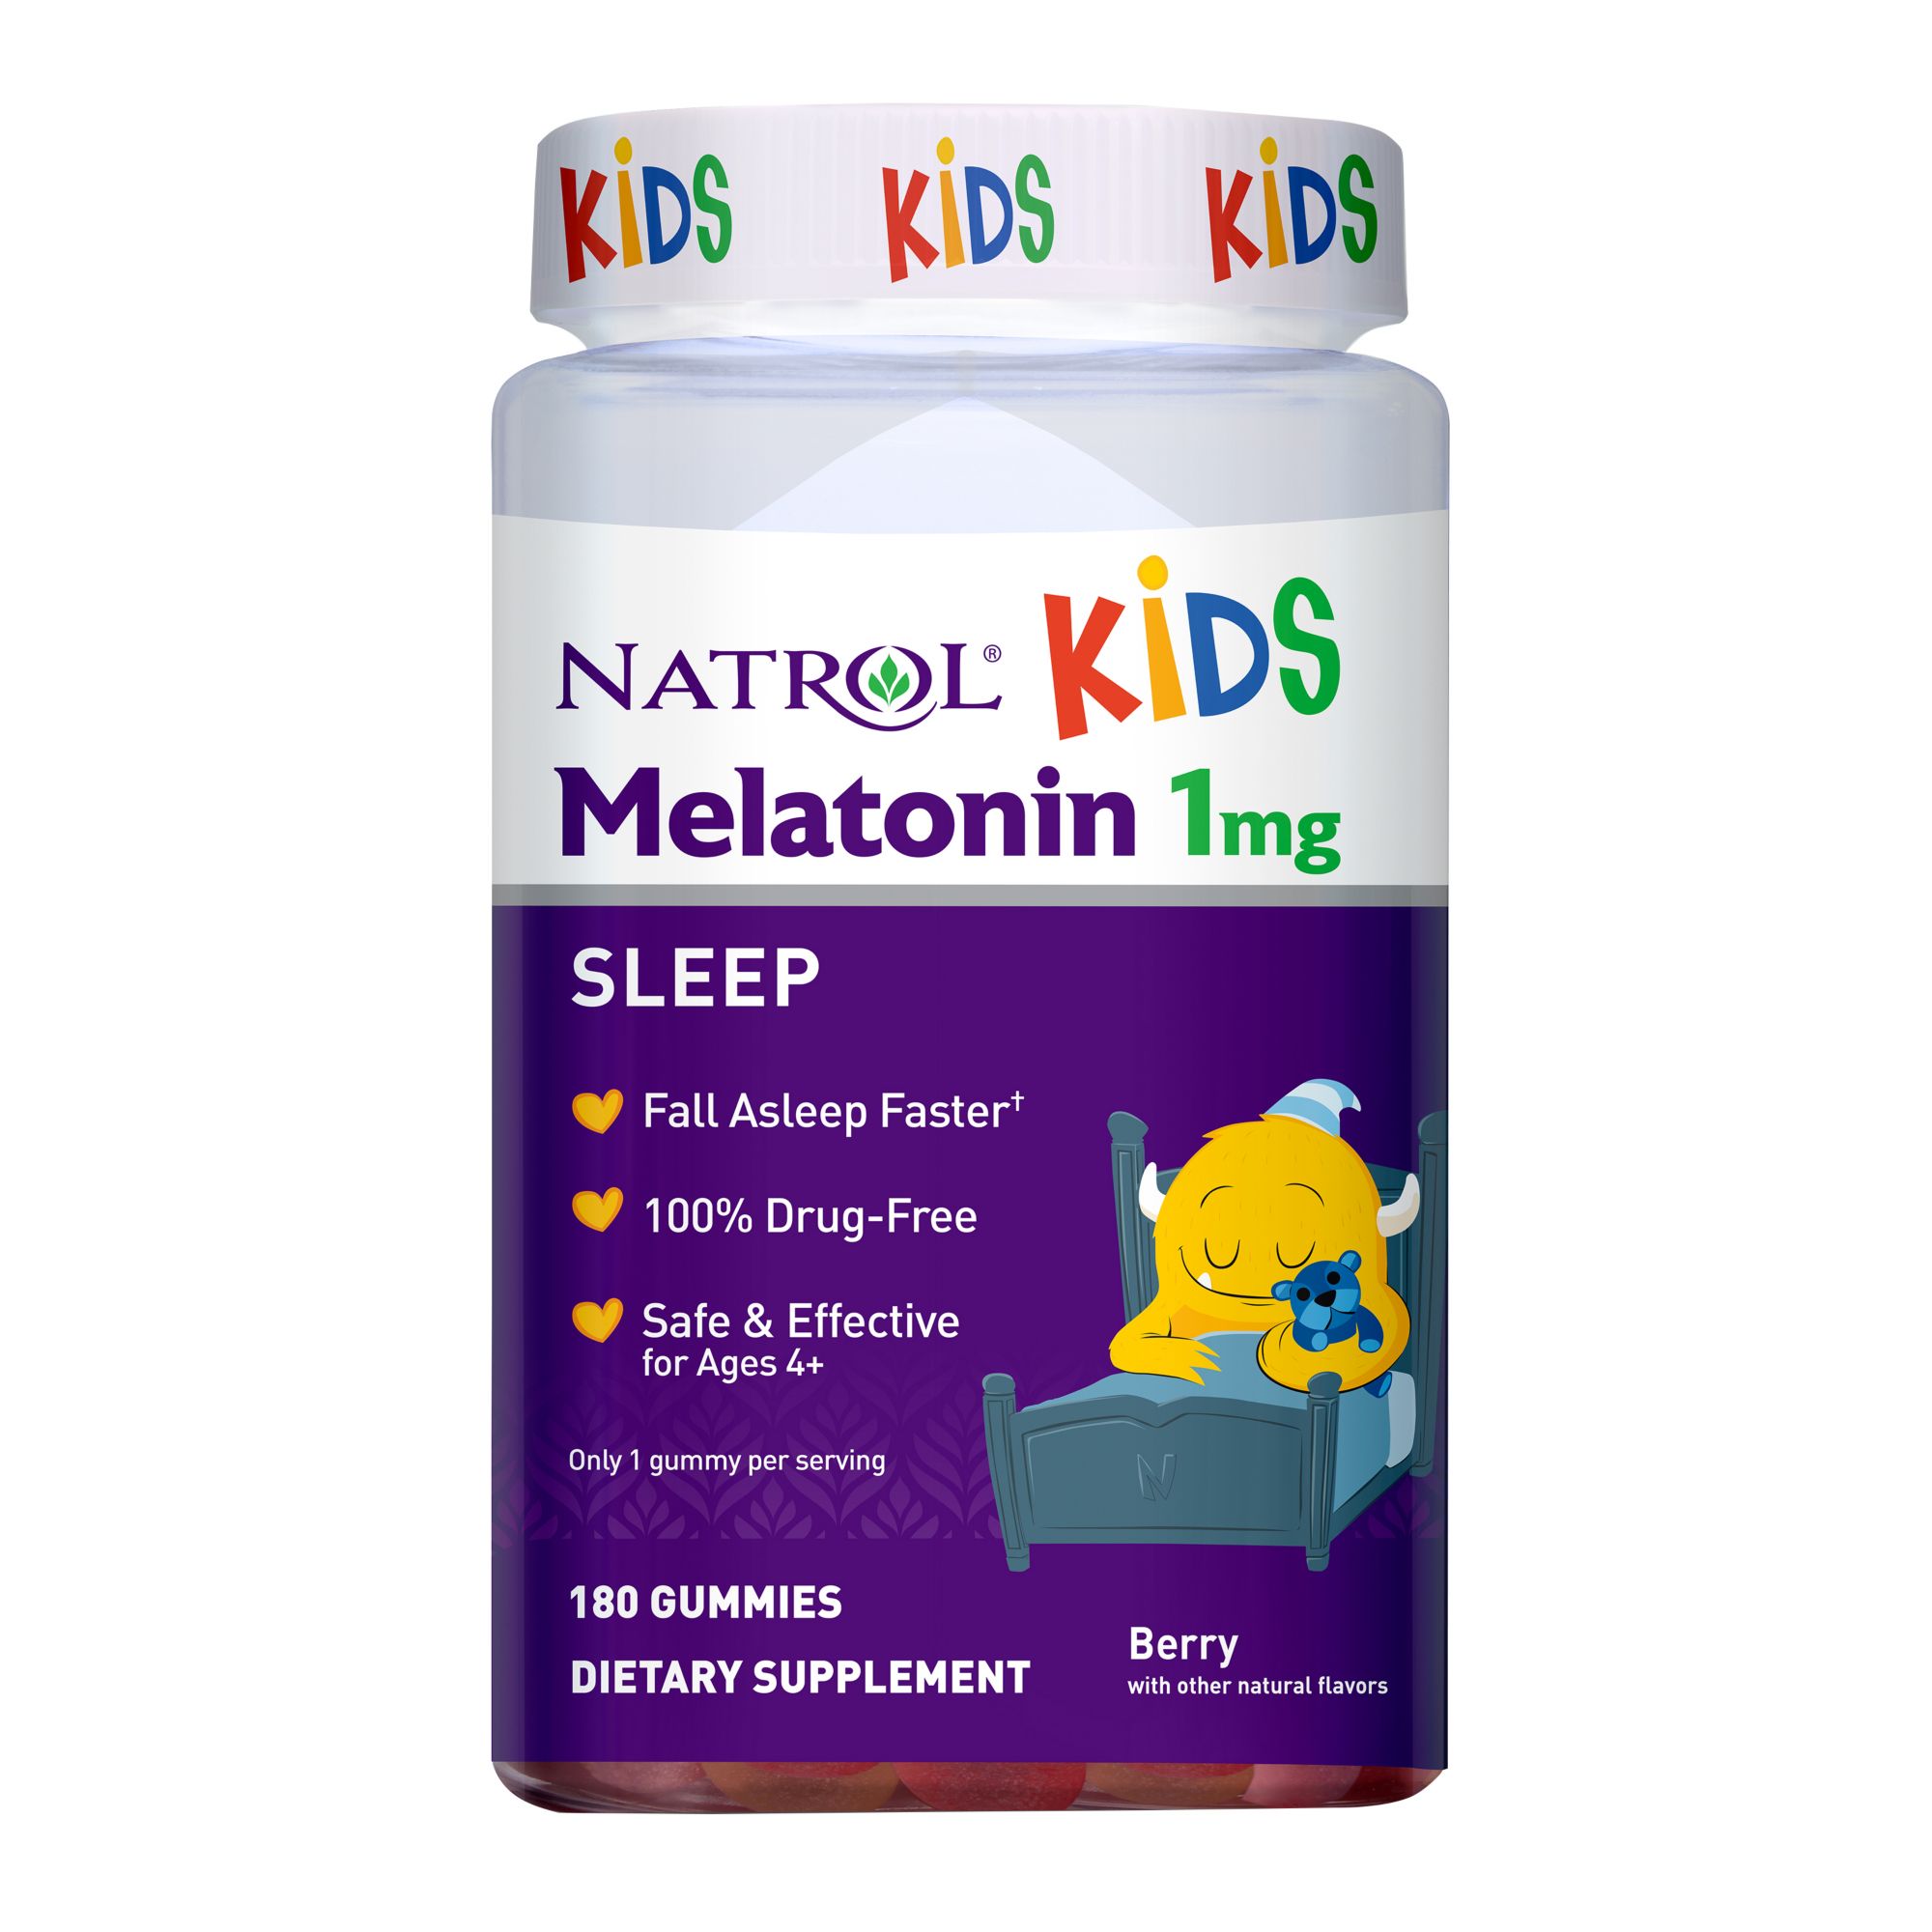 Natrol Kids Melatonin Sleep Aid Gummies, 180 ct./1 mg - Berry Flavored